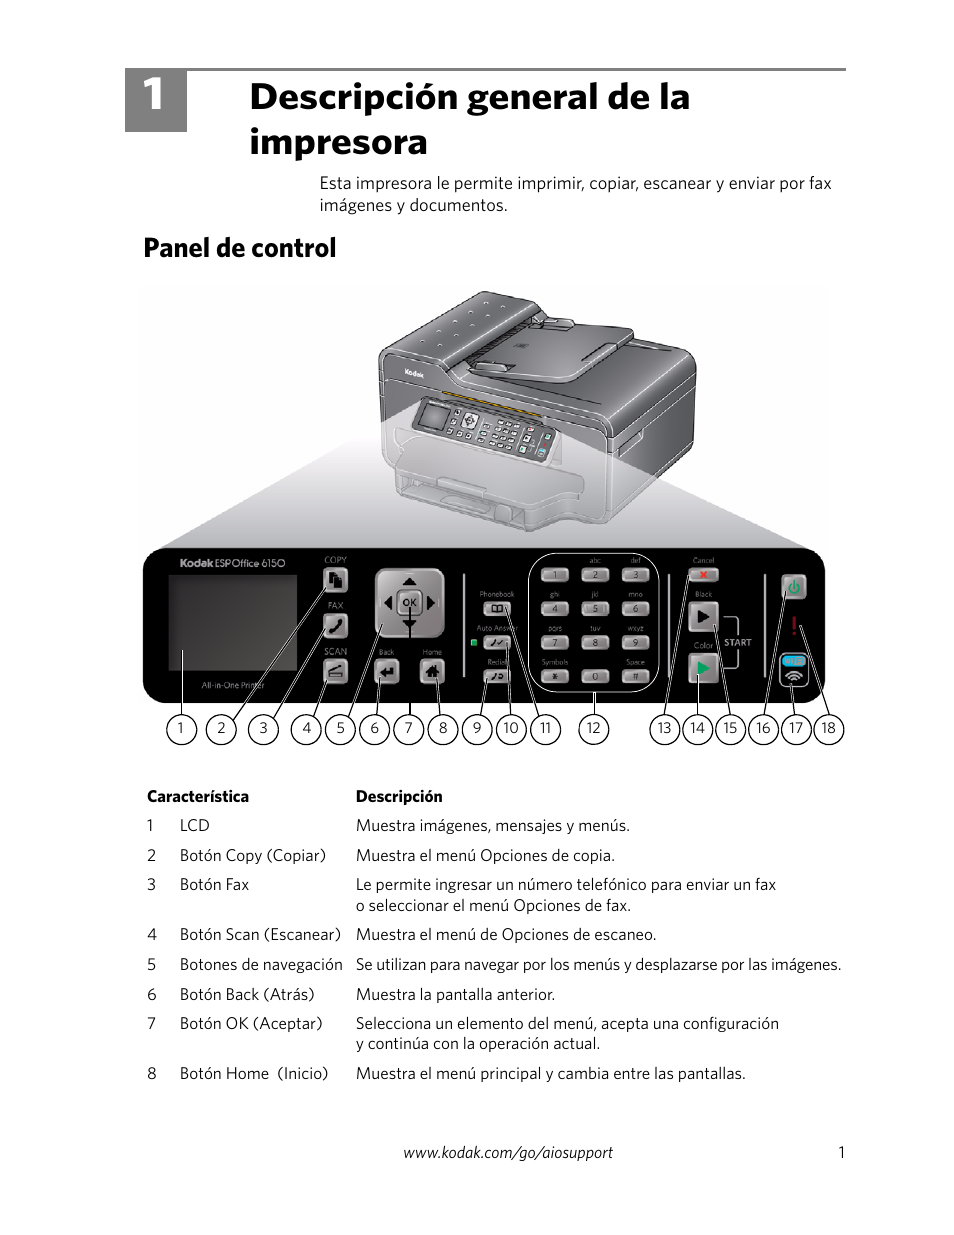 kodak esp office 6150 printer manual